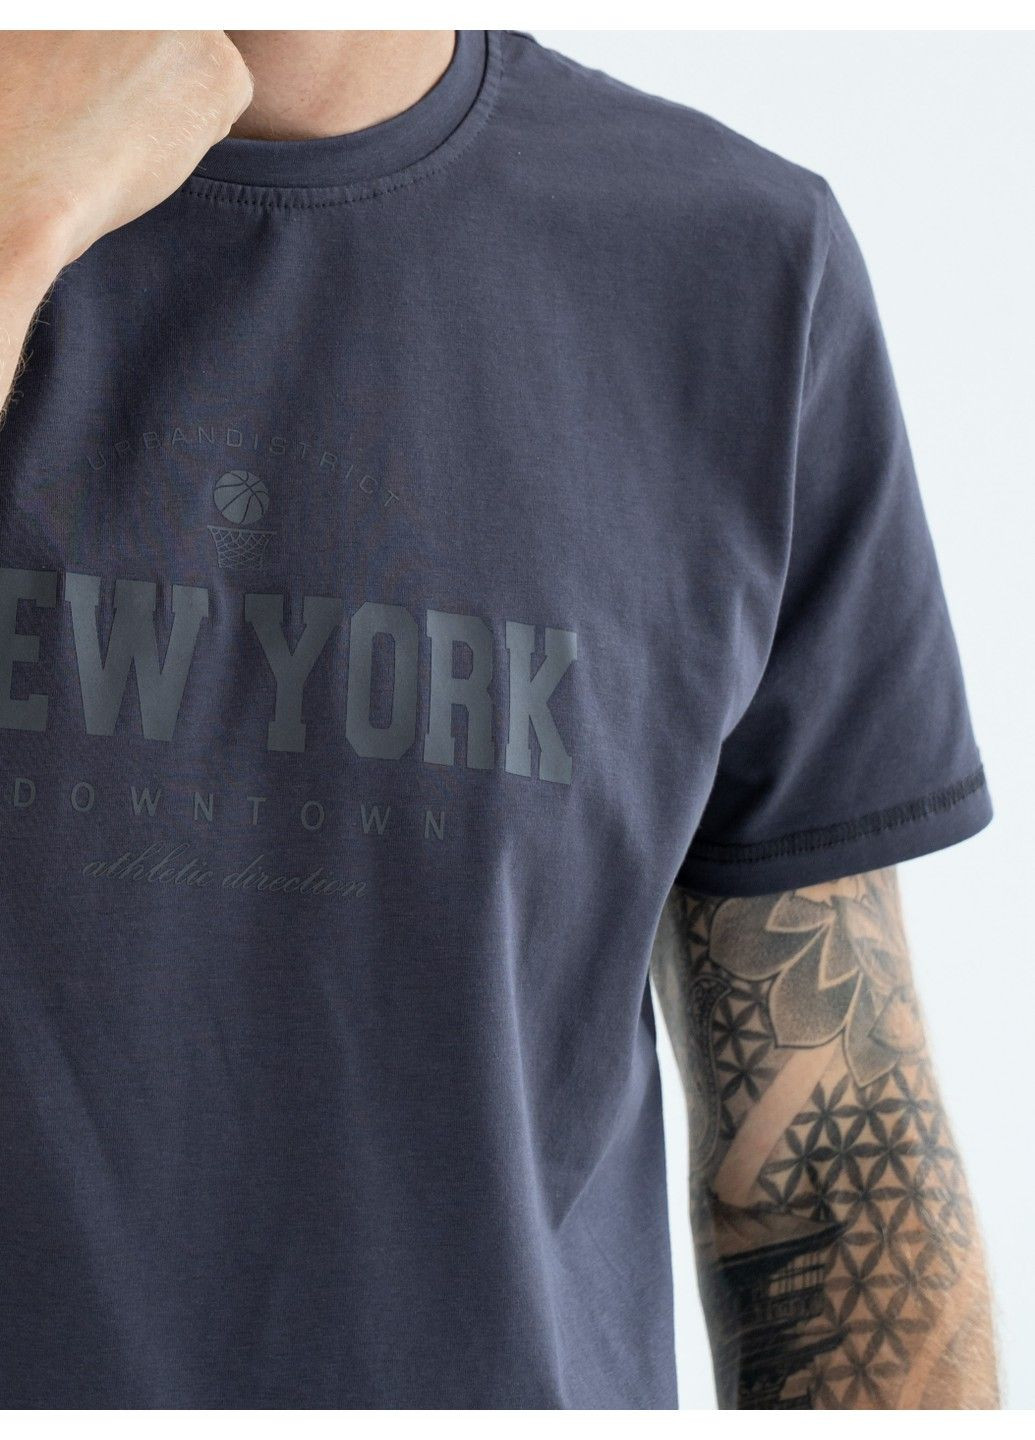 Темно-сіра чоловічі футболки new york попеляста Teamv